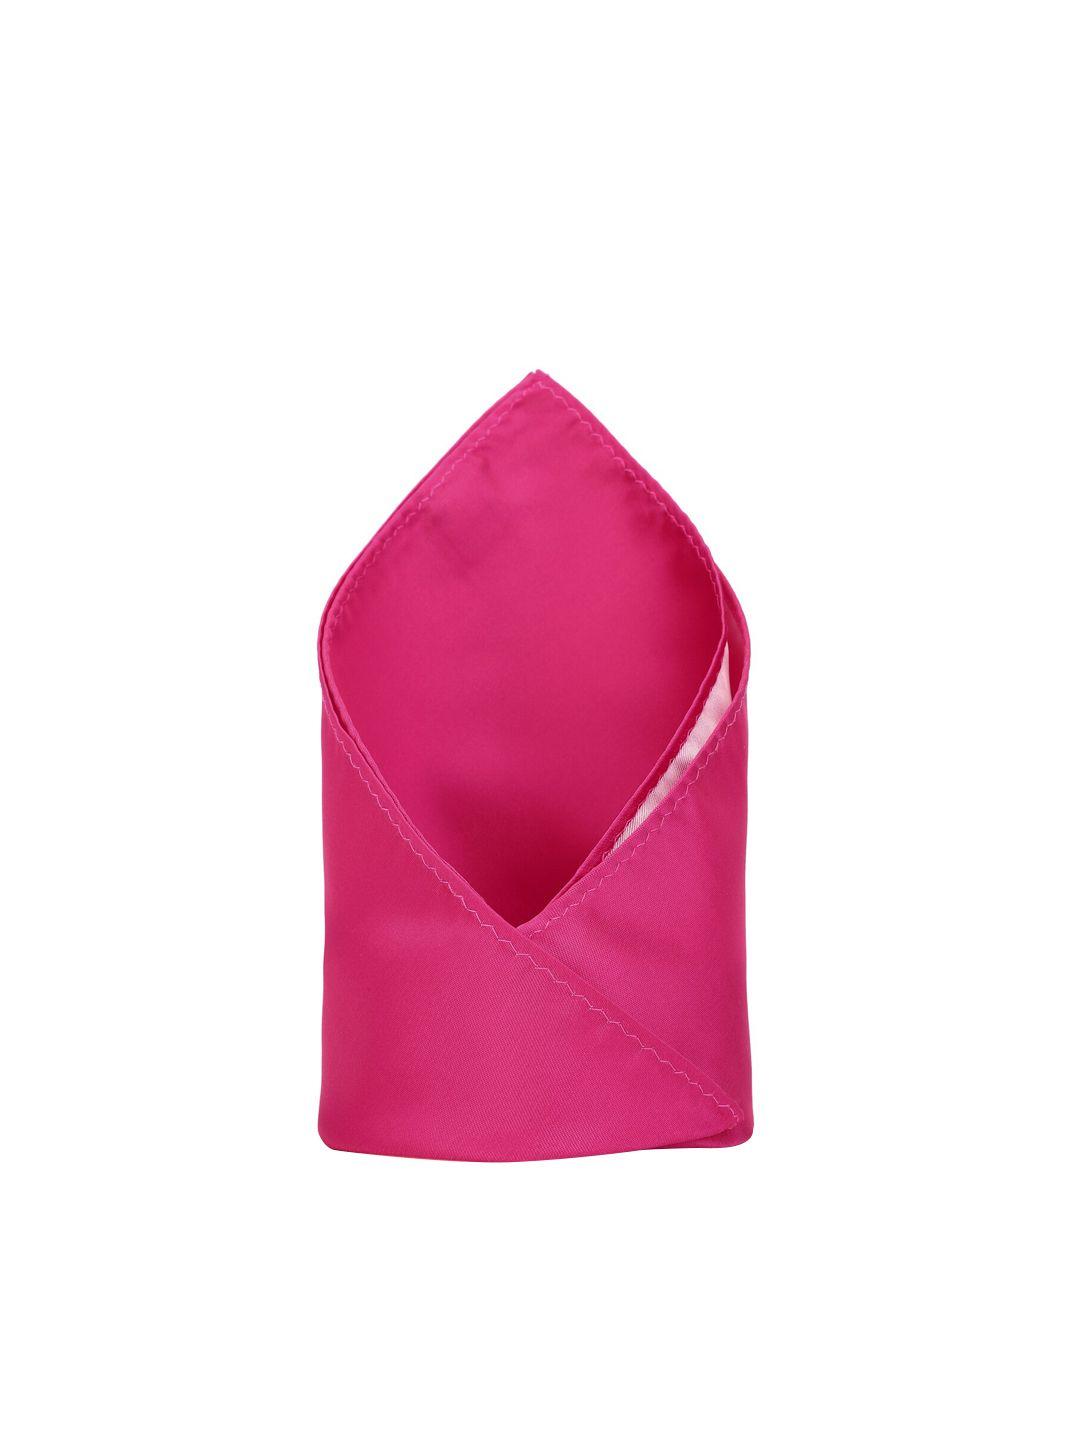 van-heusen-men-pink-accessory-gift-set